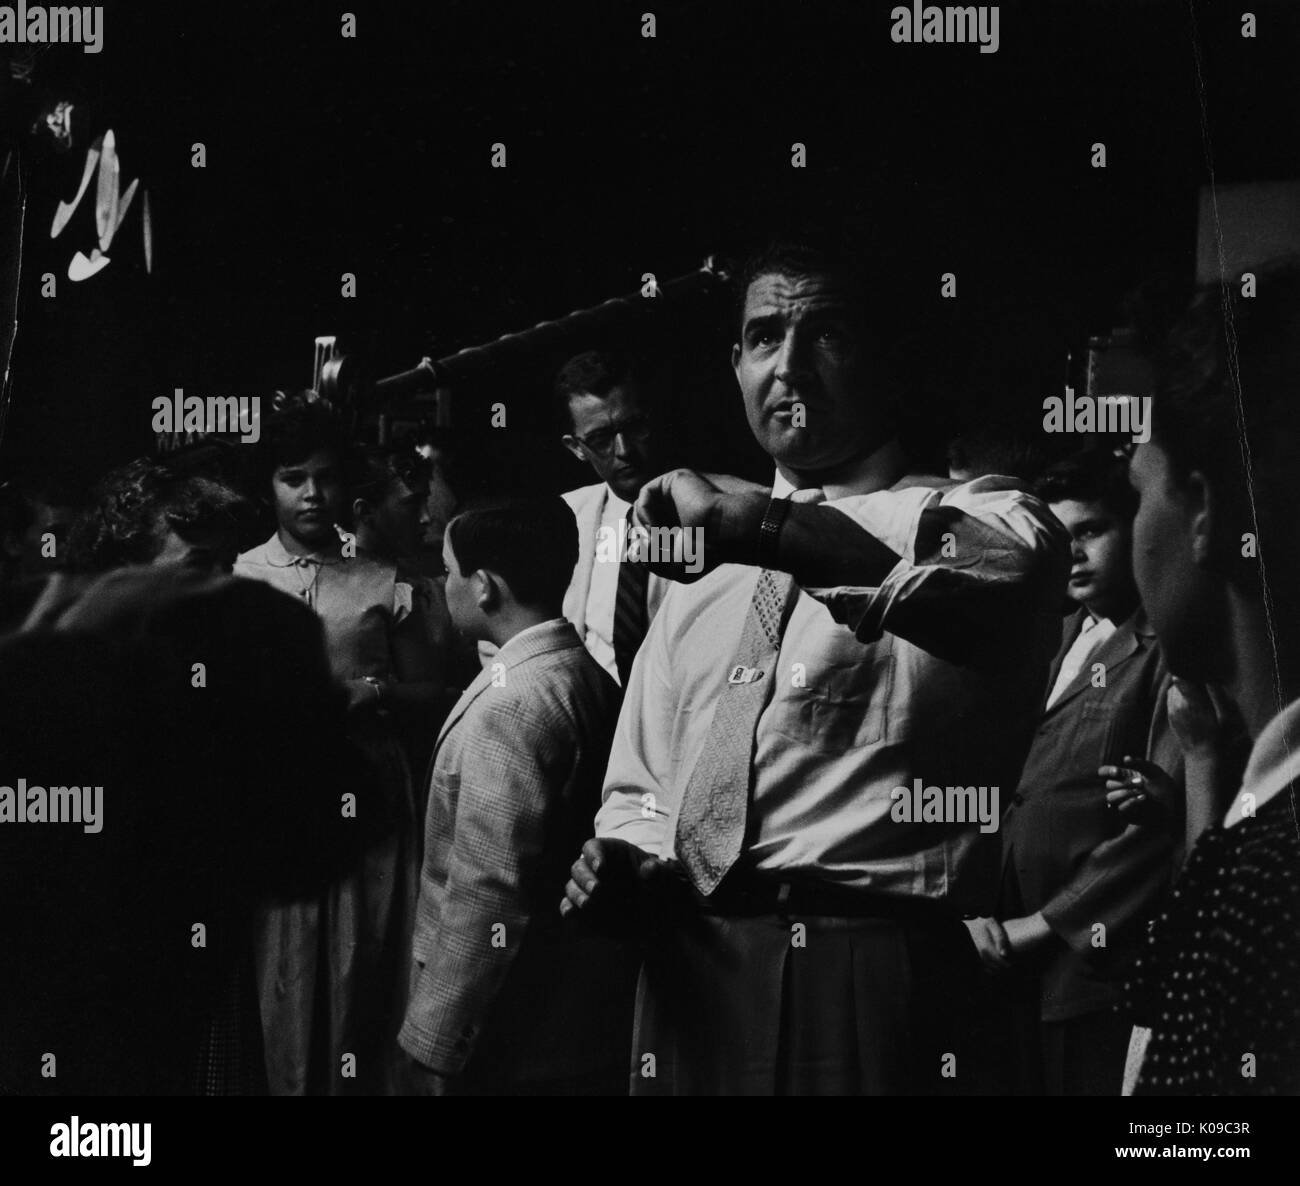 Foto di Marshall Turner, che era il direttore di atletica leggera presso la Johns Hopkins University dal 1950-1973, sta in piedi tra gli studenti, tutti sono vestiti in abiti formali, 1950. Foto Stock